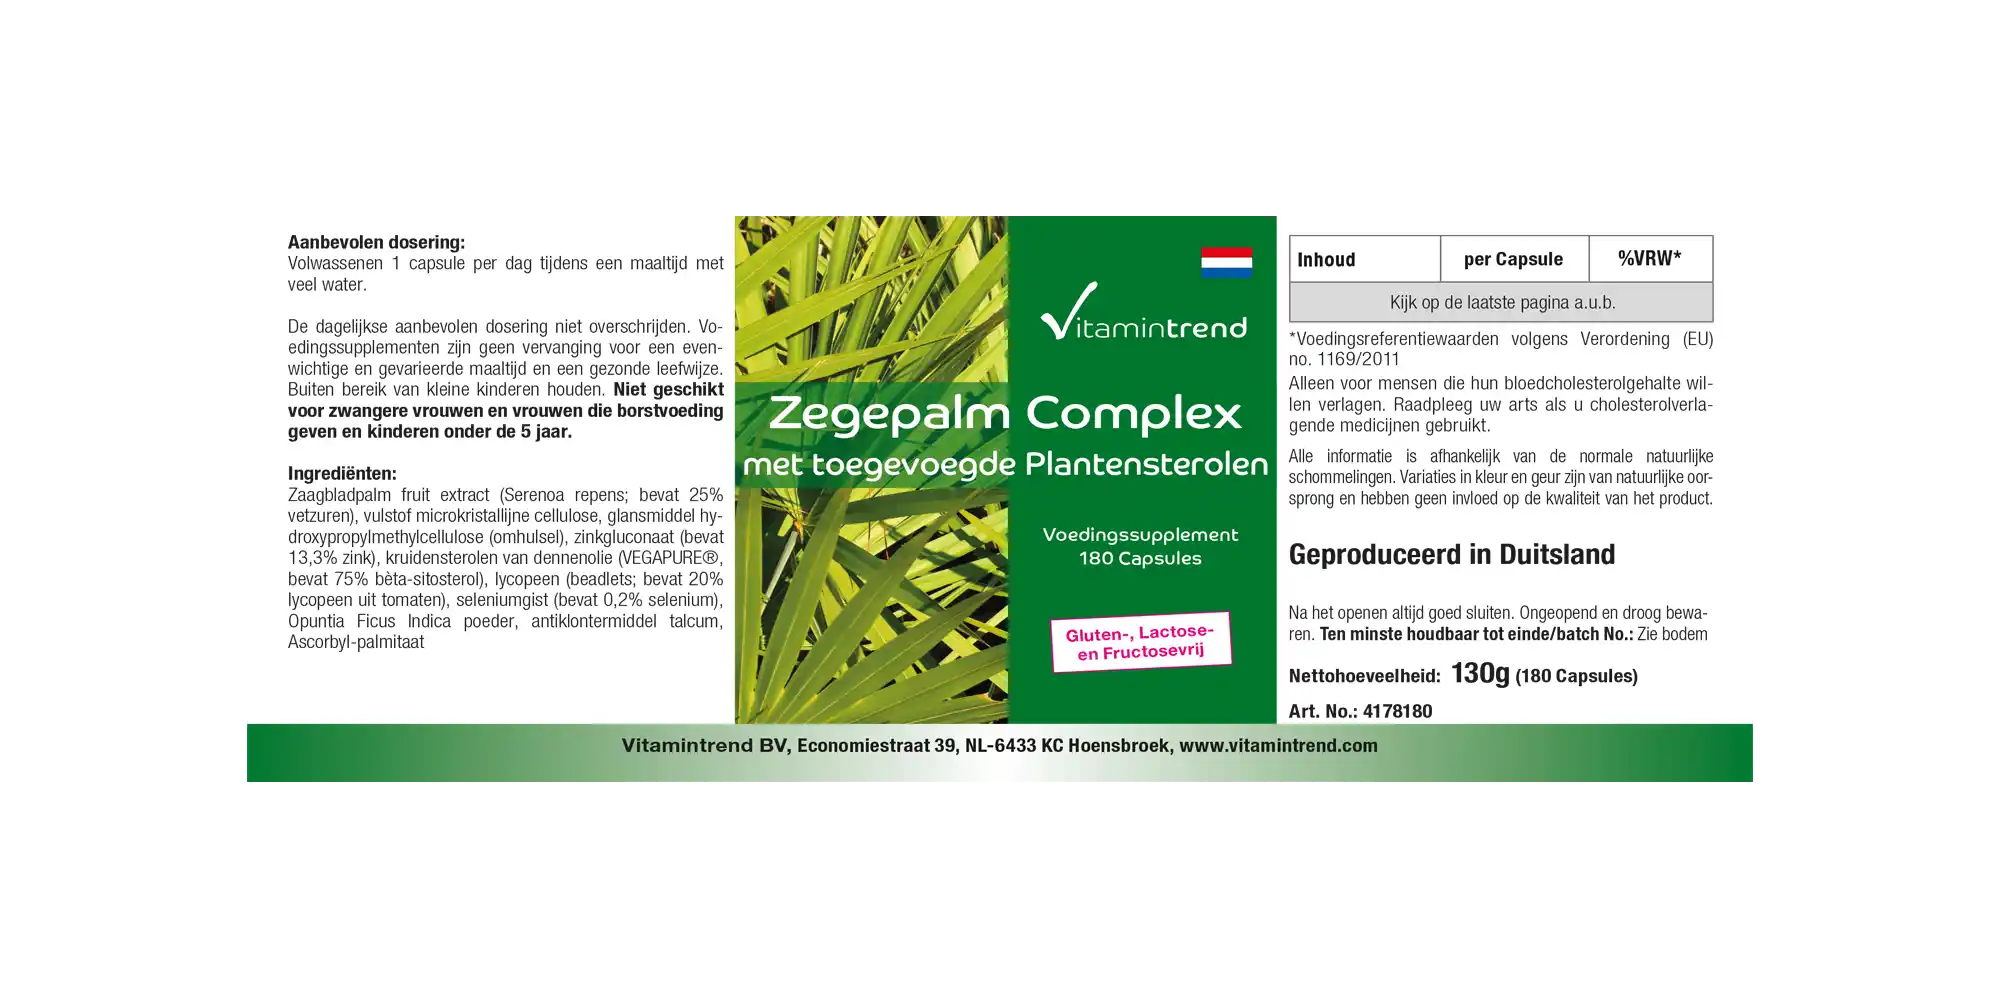 Sägepalme-Komplex - 180 Kapseln mit zugesetzen Pflanzensterolen